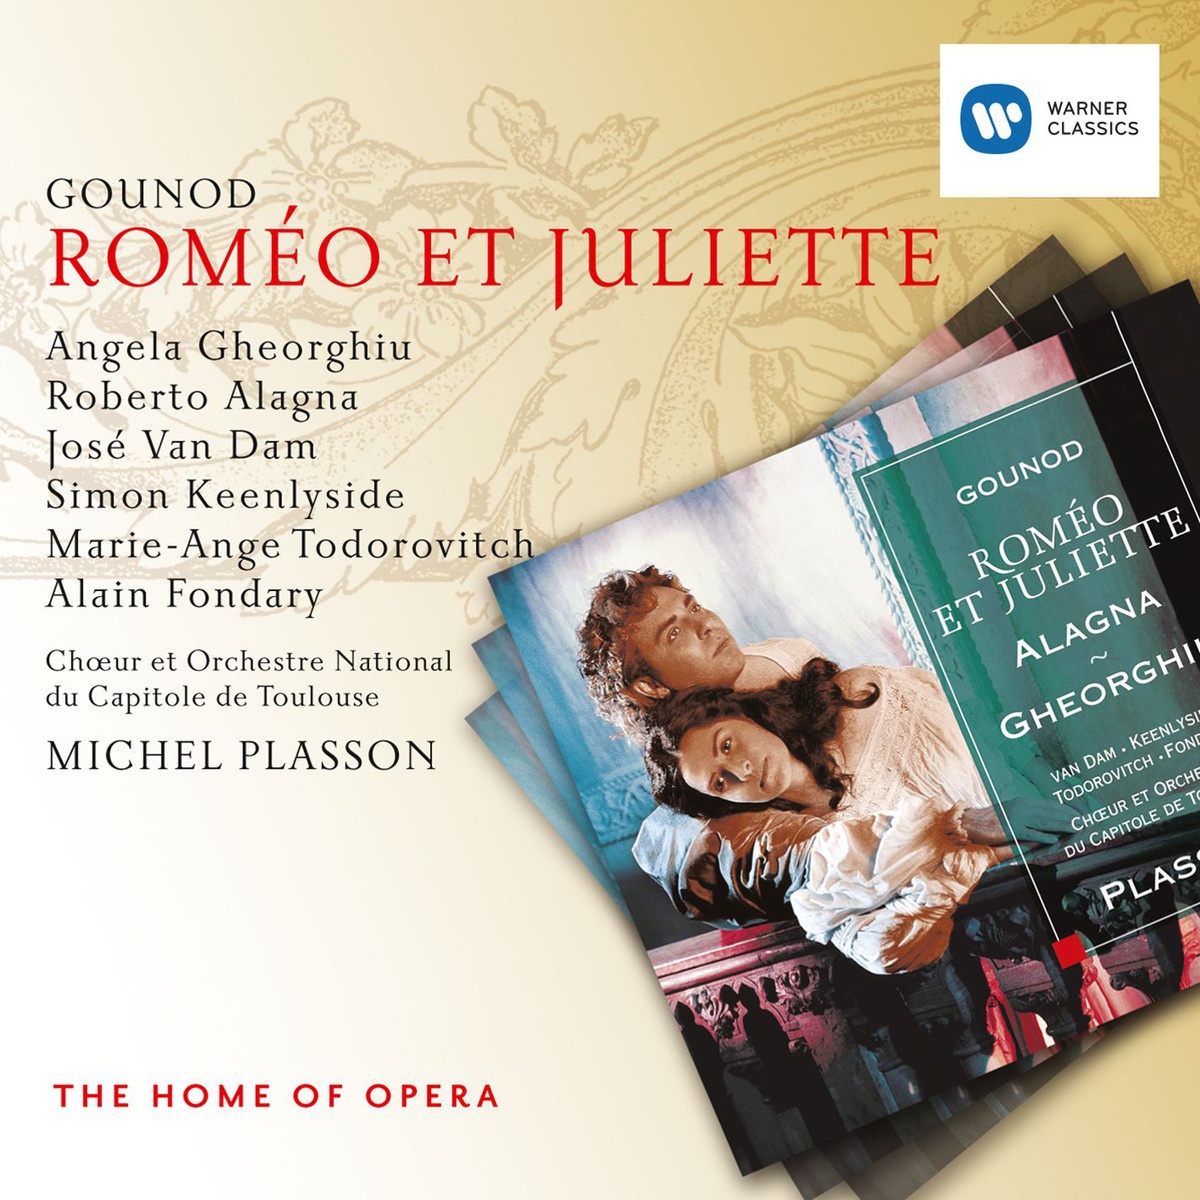 Rome o et Juliette, ACT I: Allons! jeunes gens! Allons! belles dames! Capulet Choeur